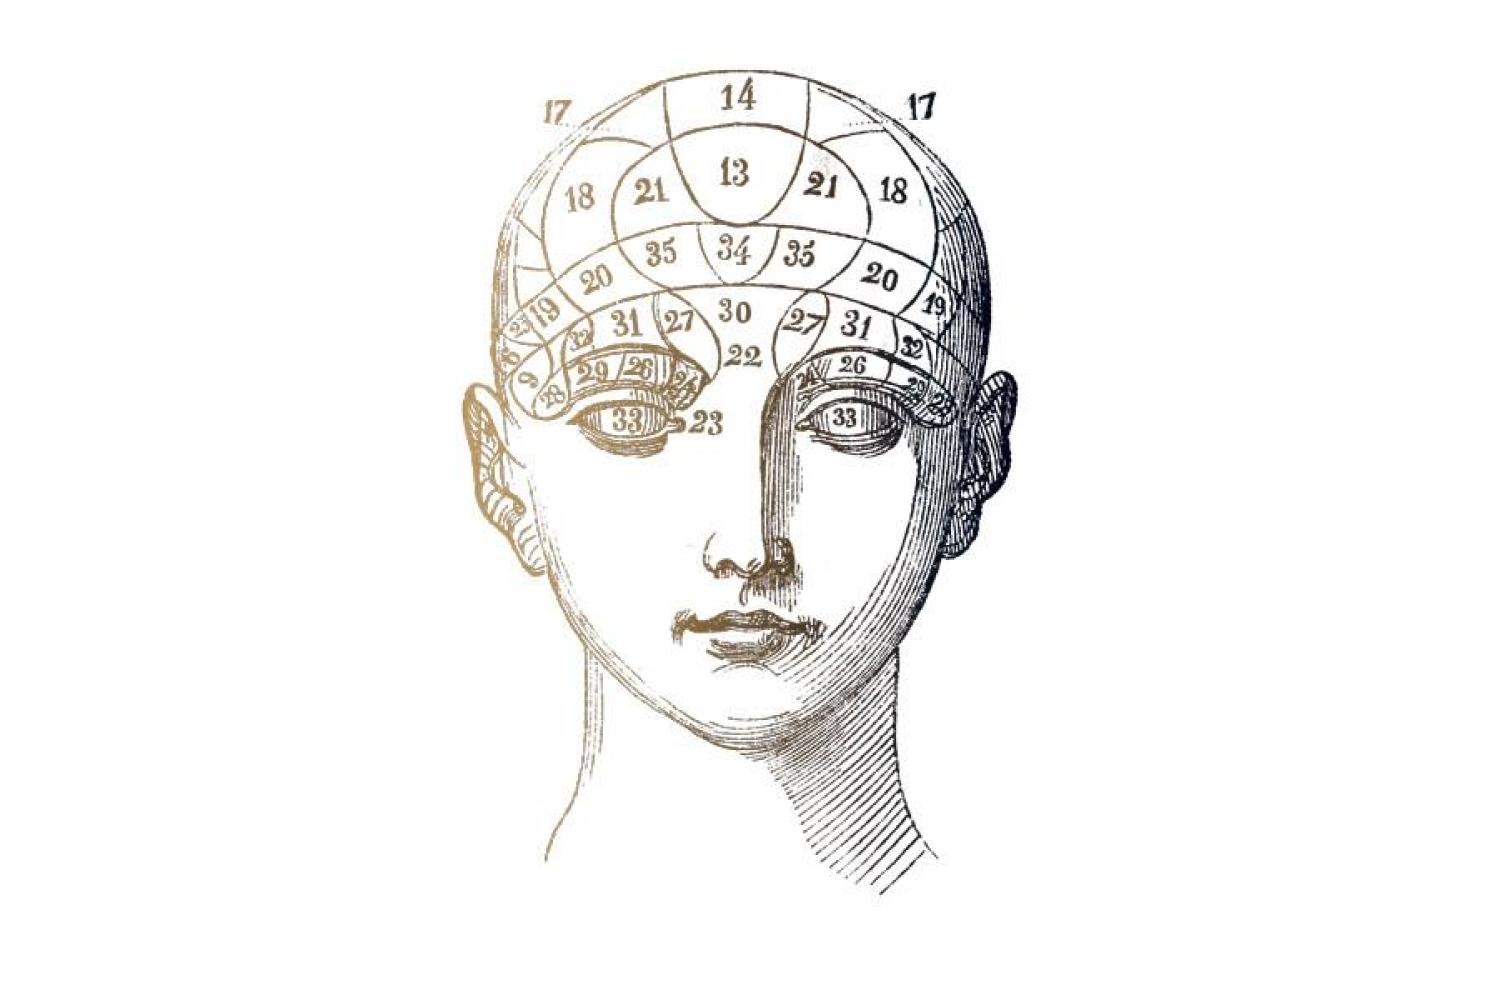 D'après une planche d’organographie, tirée du Manuel pratique de phrénologie ou Physiologie du cerveau, par le Dr Giovanni Fossati, 1845 -  - BnF, département des Sciences et techniques